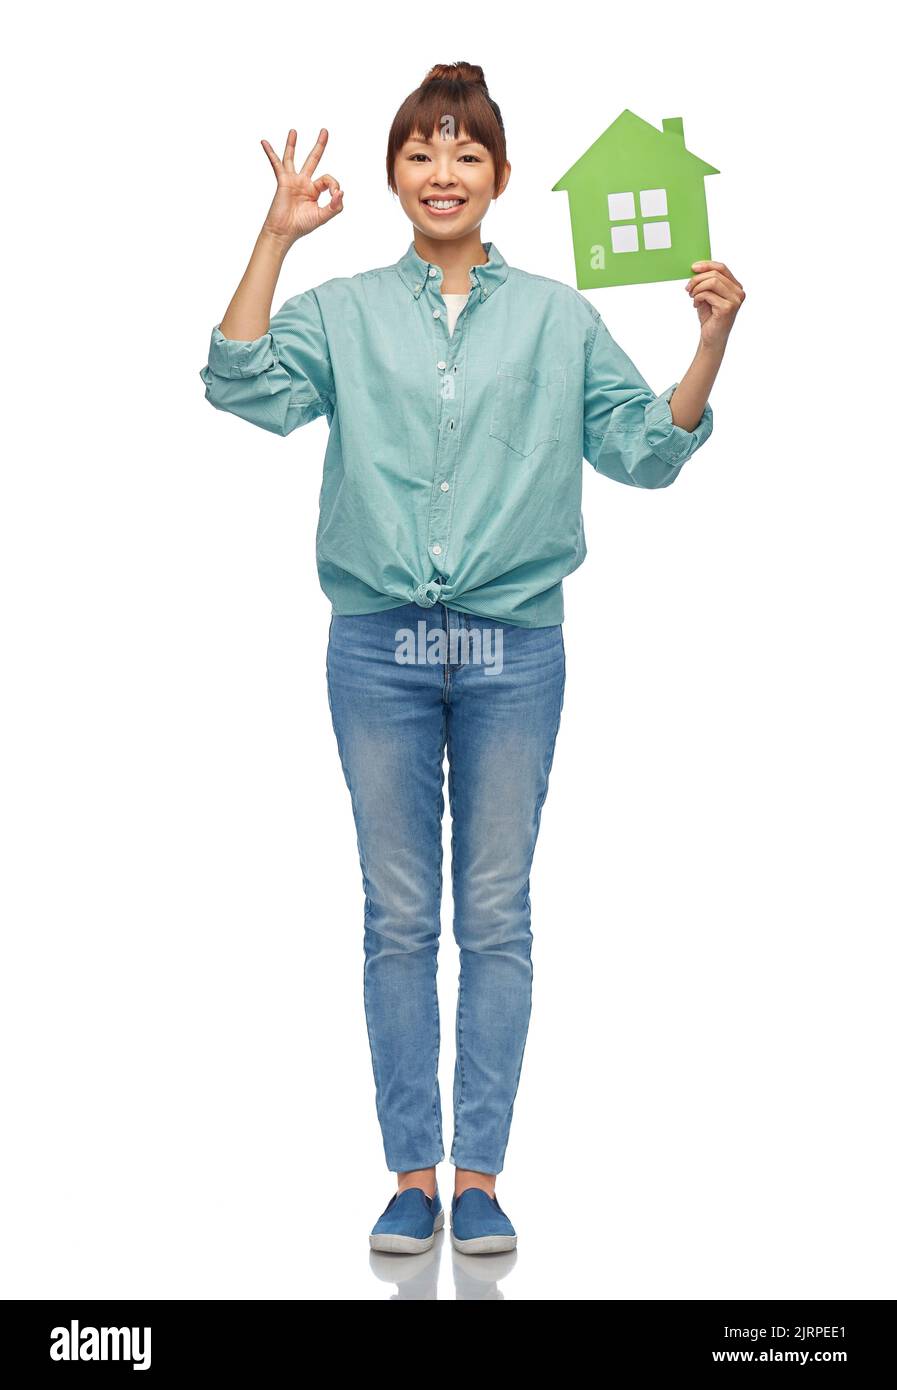 asiatische Frau mit grünem Haus zeigt ok Hand Zeichen Stockfoto